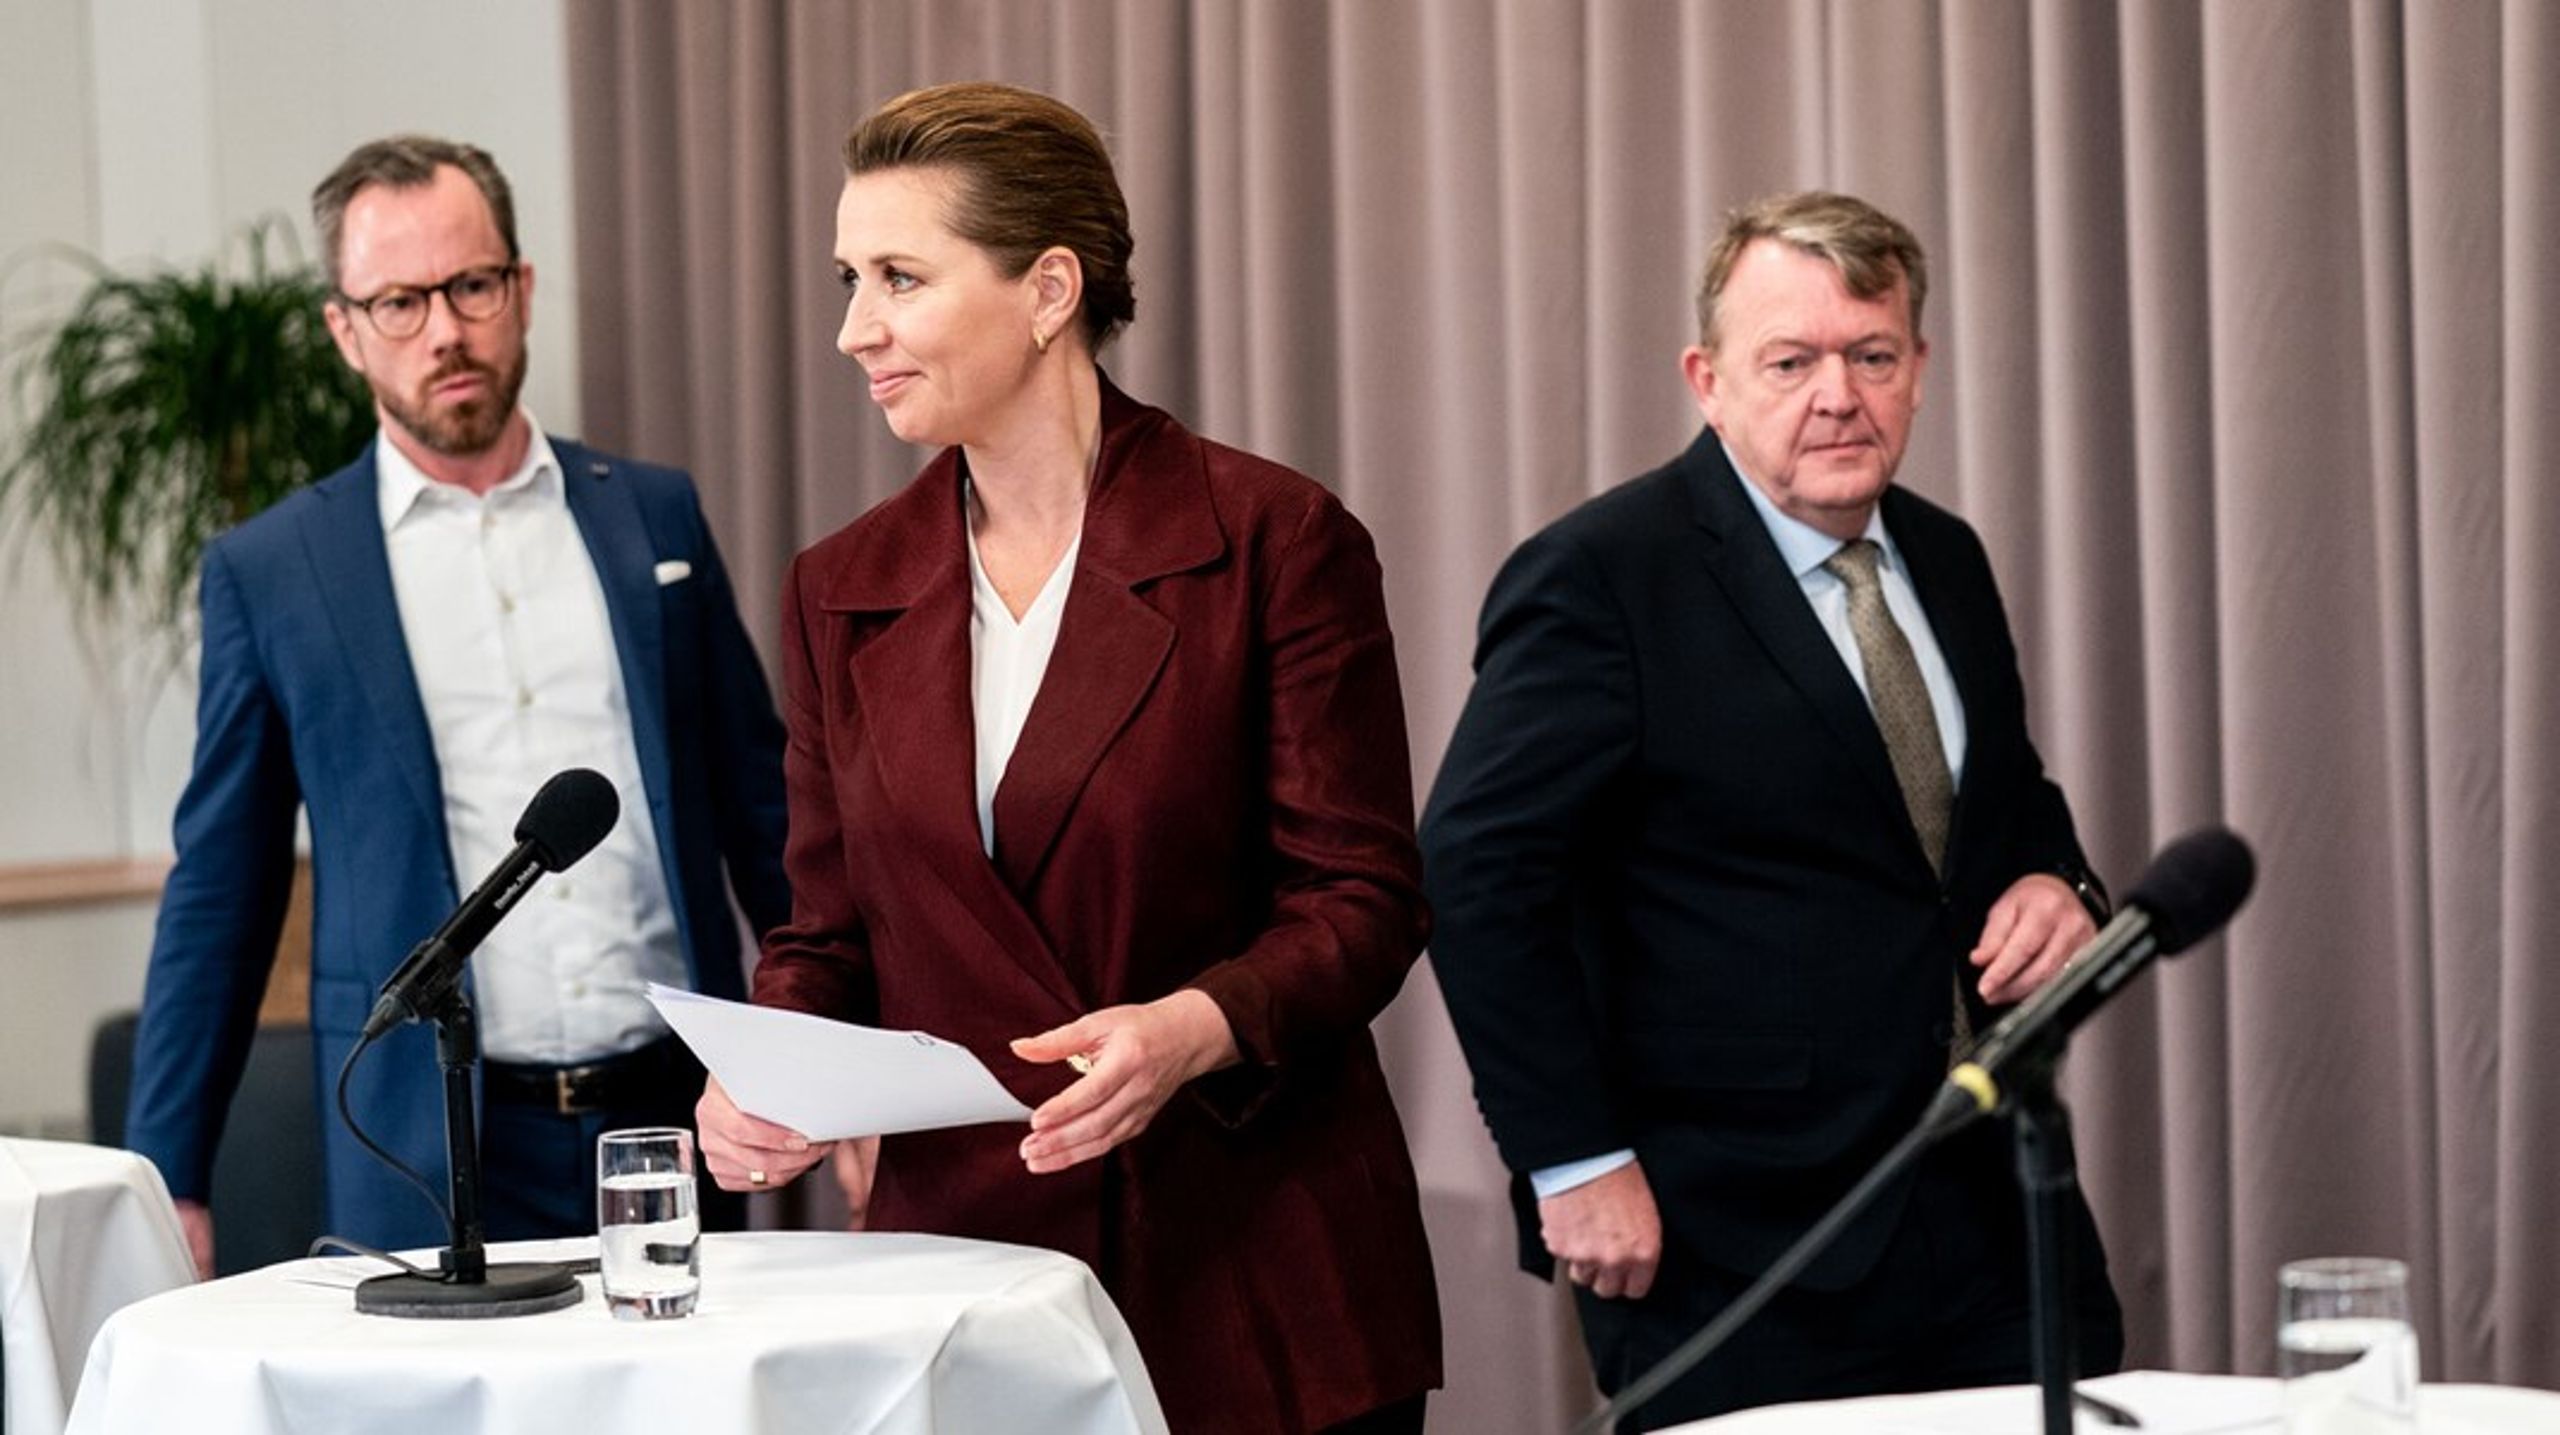 De tre partiledere i regeringen, Mette Frederiksen (S), Jakob Ellemann-Jensen (V) og Lars Løkke Rasmussen (M), har i et interview med Berlingske præsenteret&nbsp;fire overskrifter, der vil være styrende for arbejdet det kommende år.